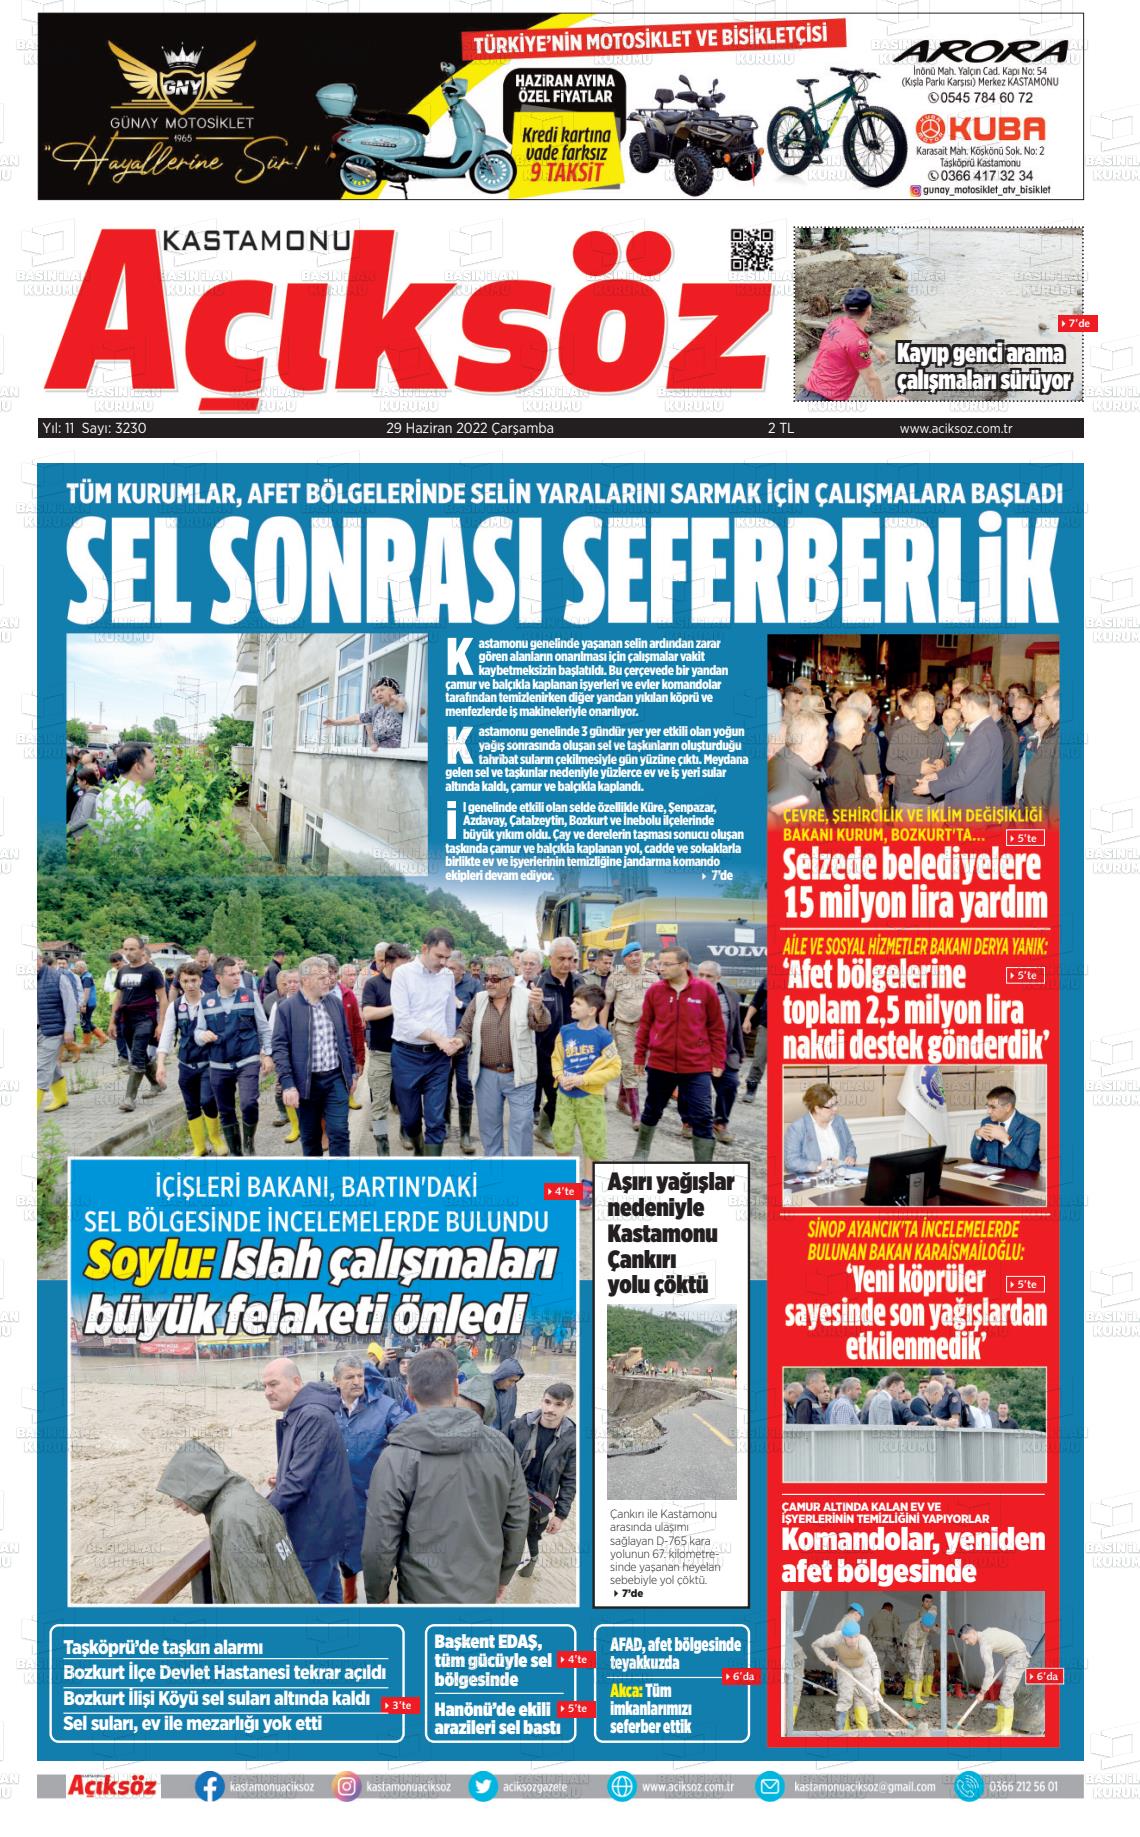 29 Haziran 2022 KASTAMONU AÇIKSÖZ GAZETESİ Gazete Manşeti